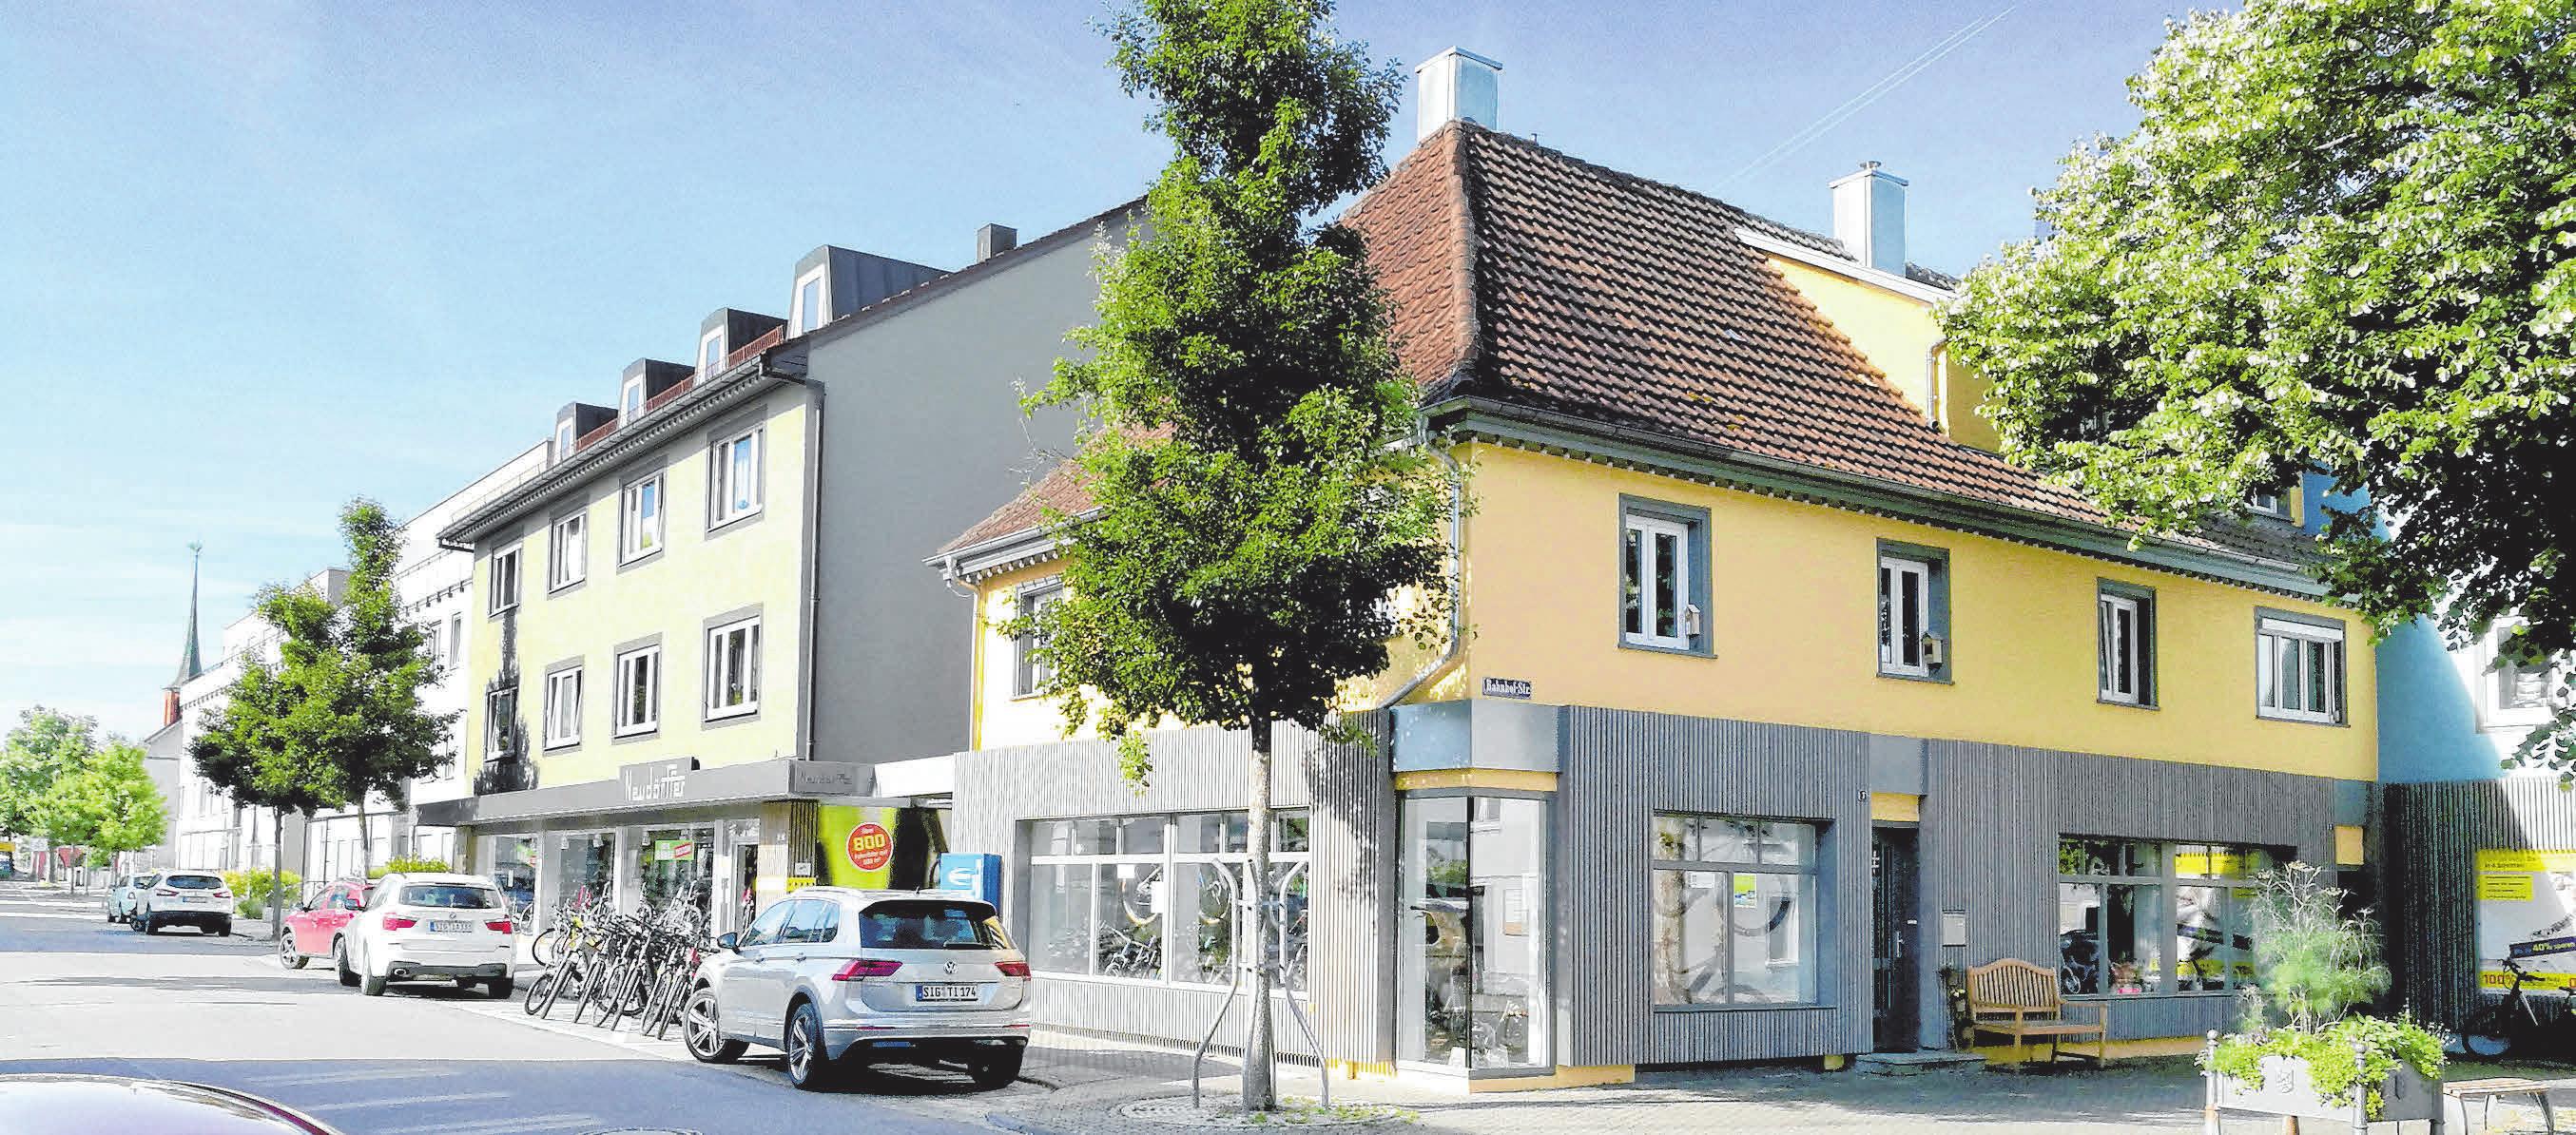 Neudörffer Zweirad & Service in Bad Saulgau: Alles auf dem neuesten Stand der Technik